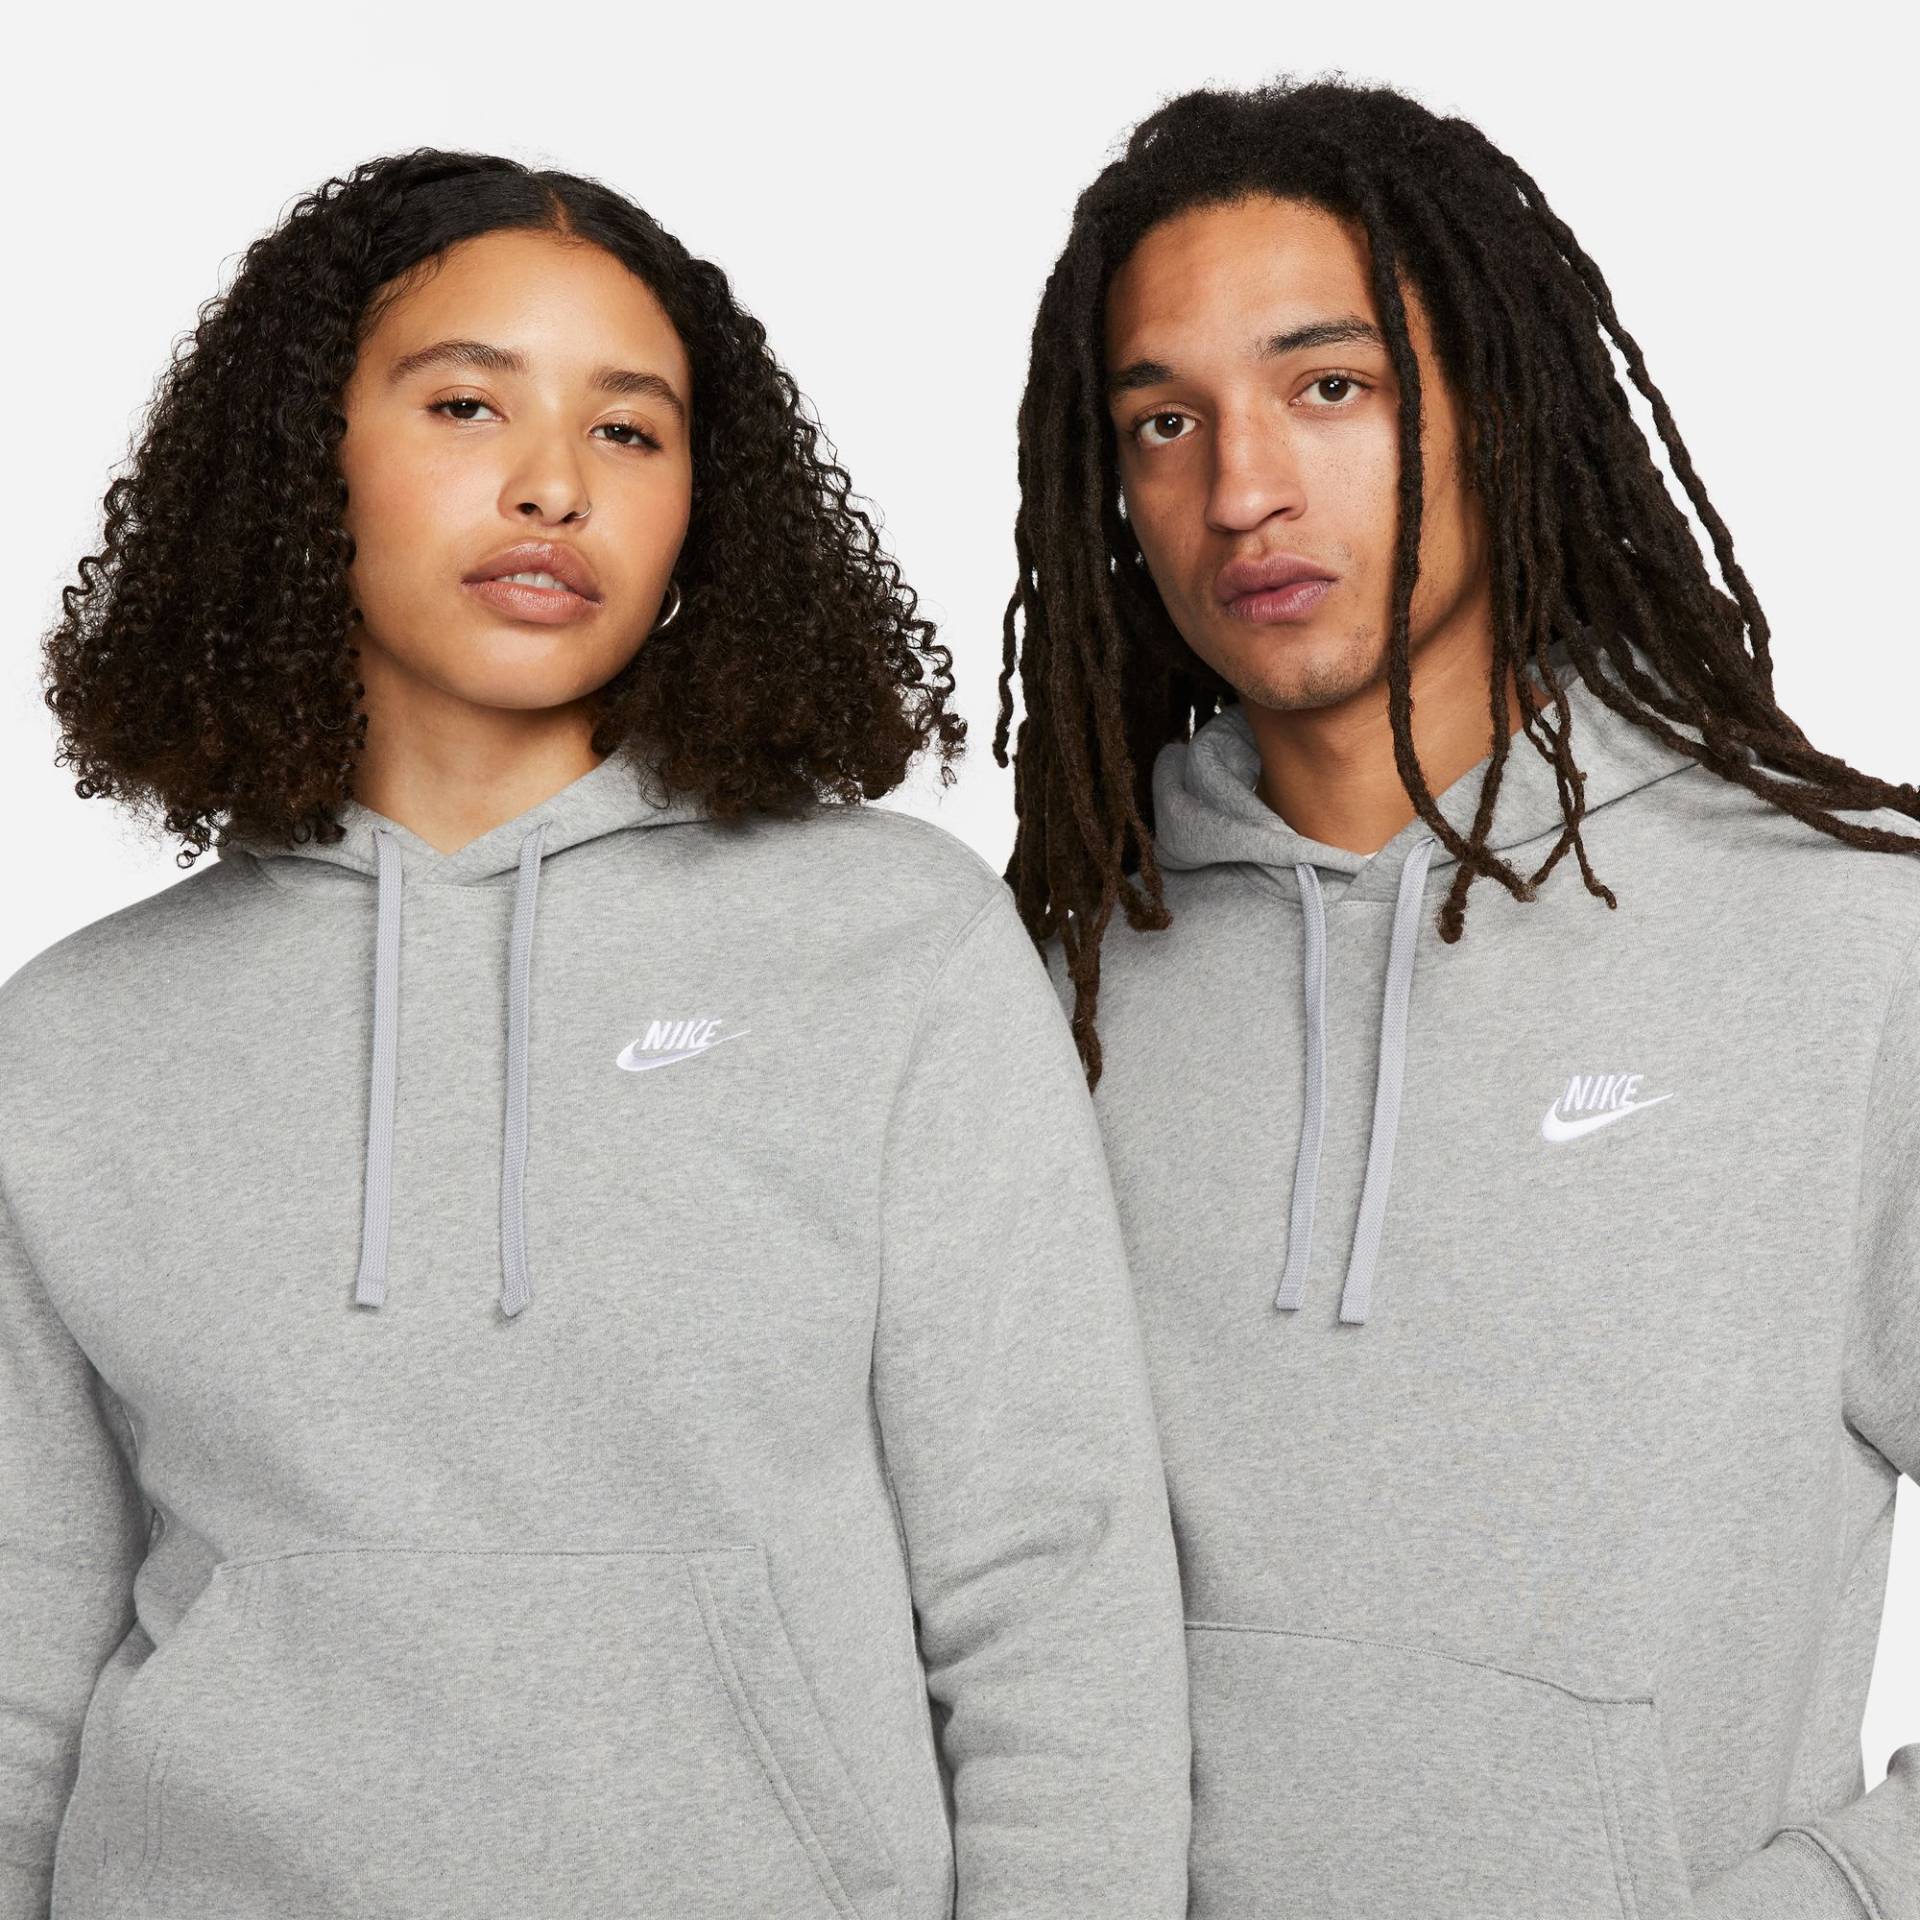 Nike Sportswear Kapuzensweatshirt »CLUB FLEECE PULLOVER HOODIE« von Nike Sportswear